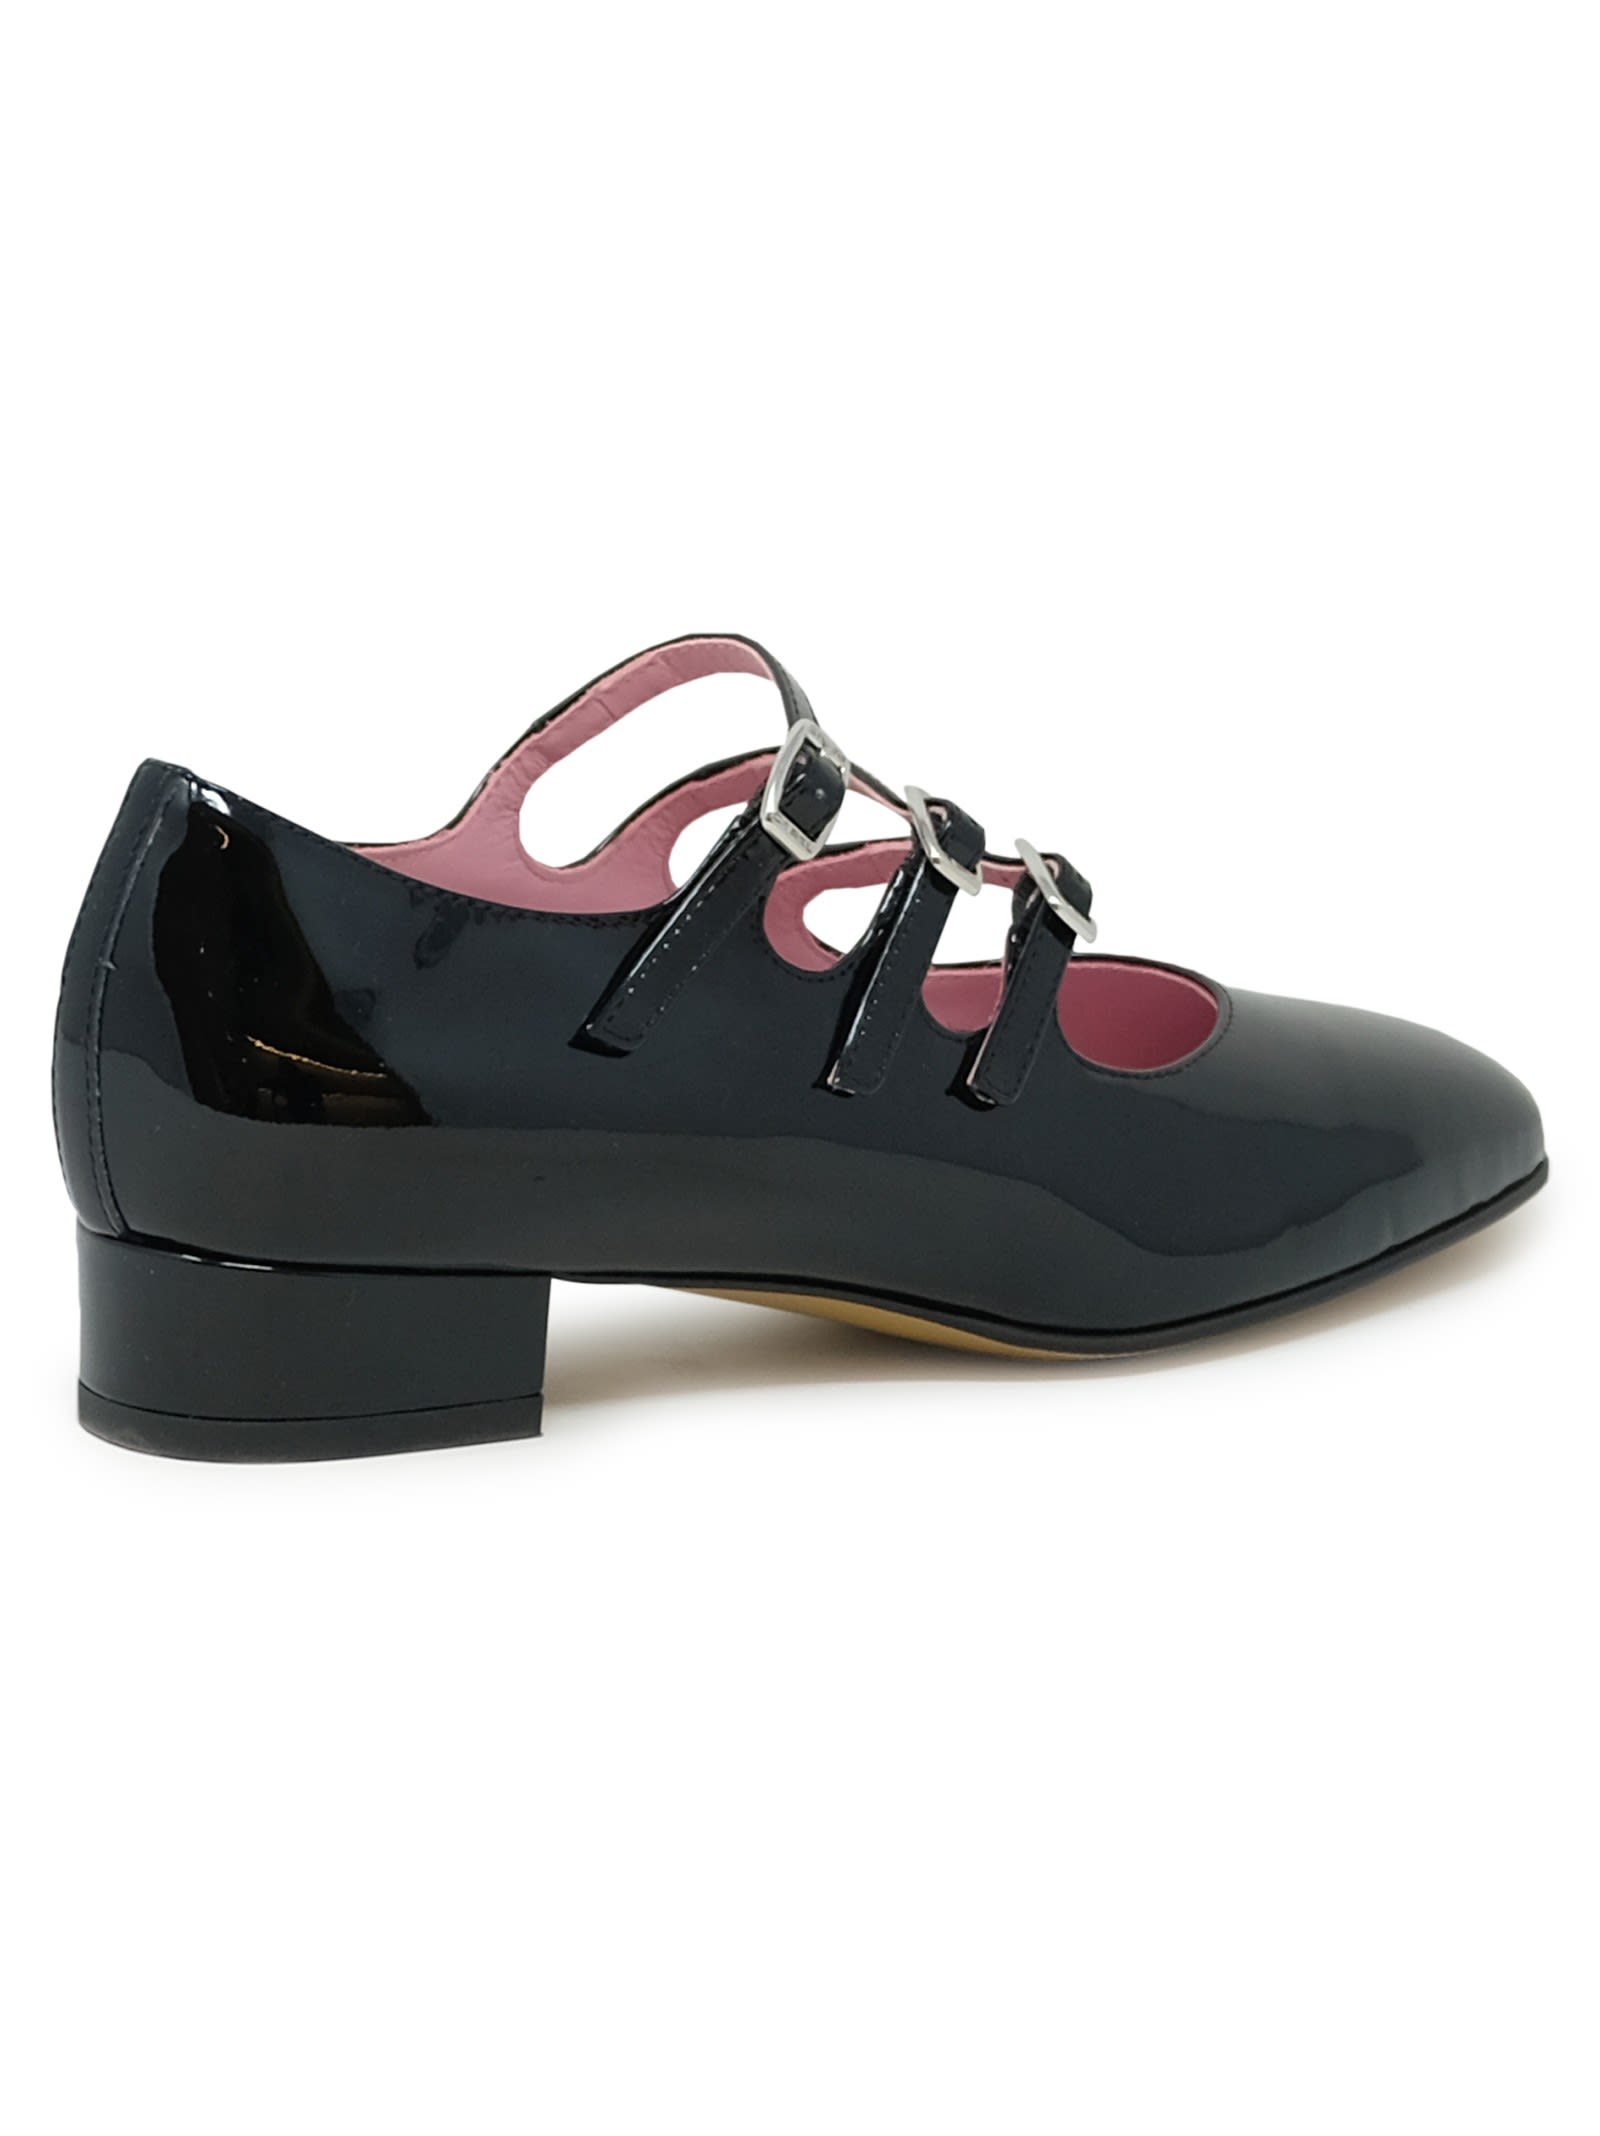 Shop Carel Paris Black Patent Leather Ballet Shoes